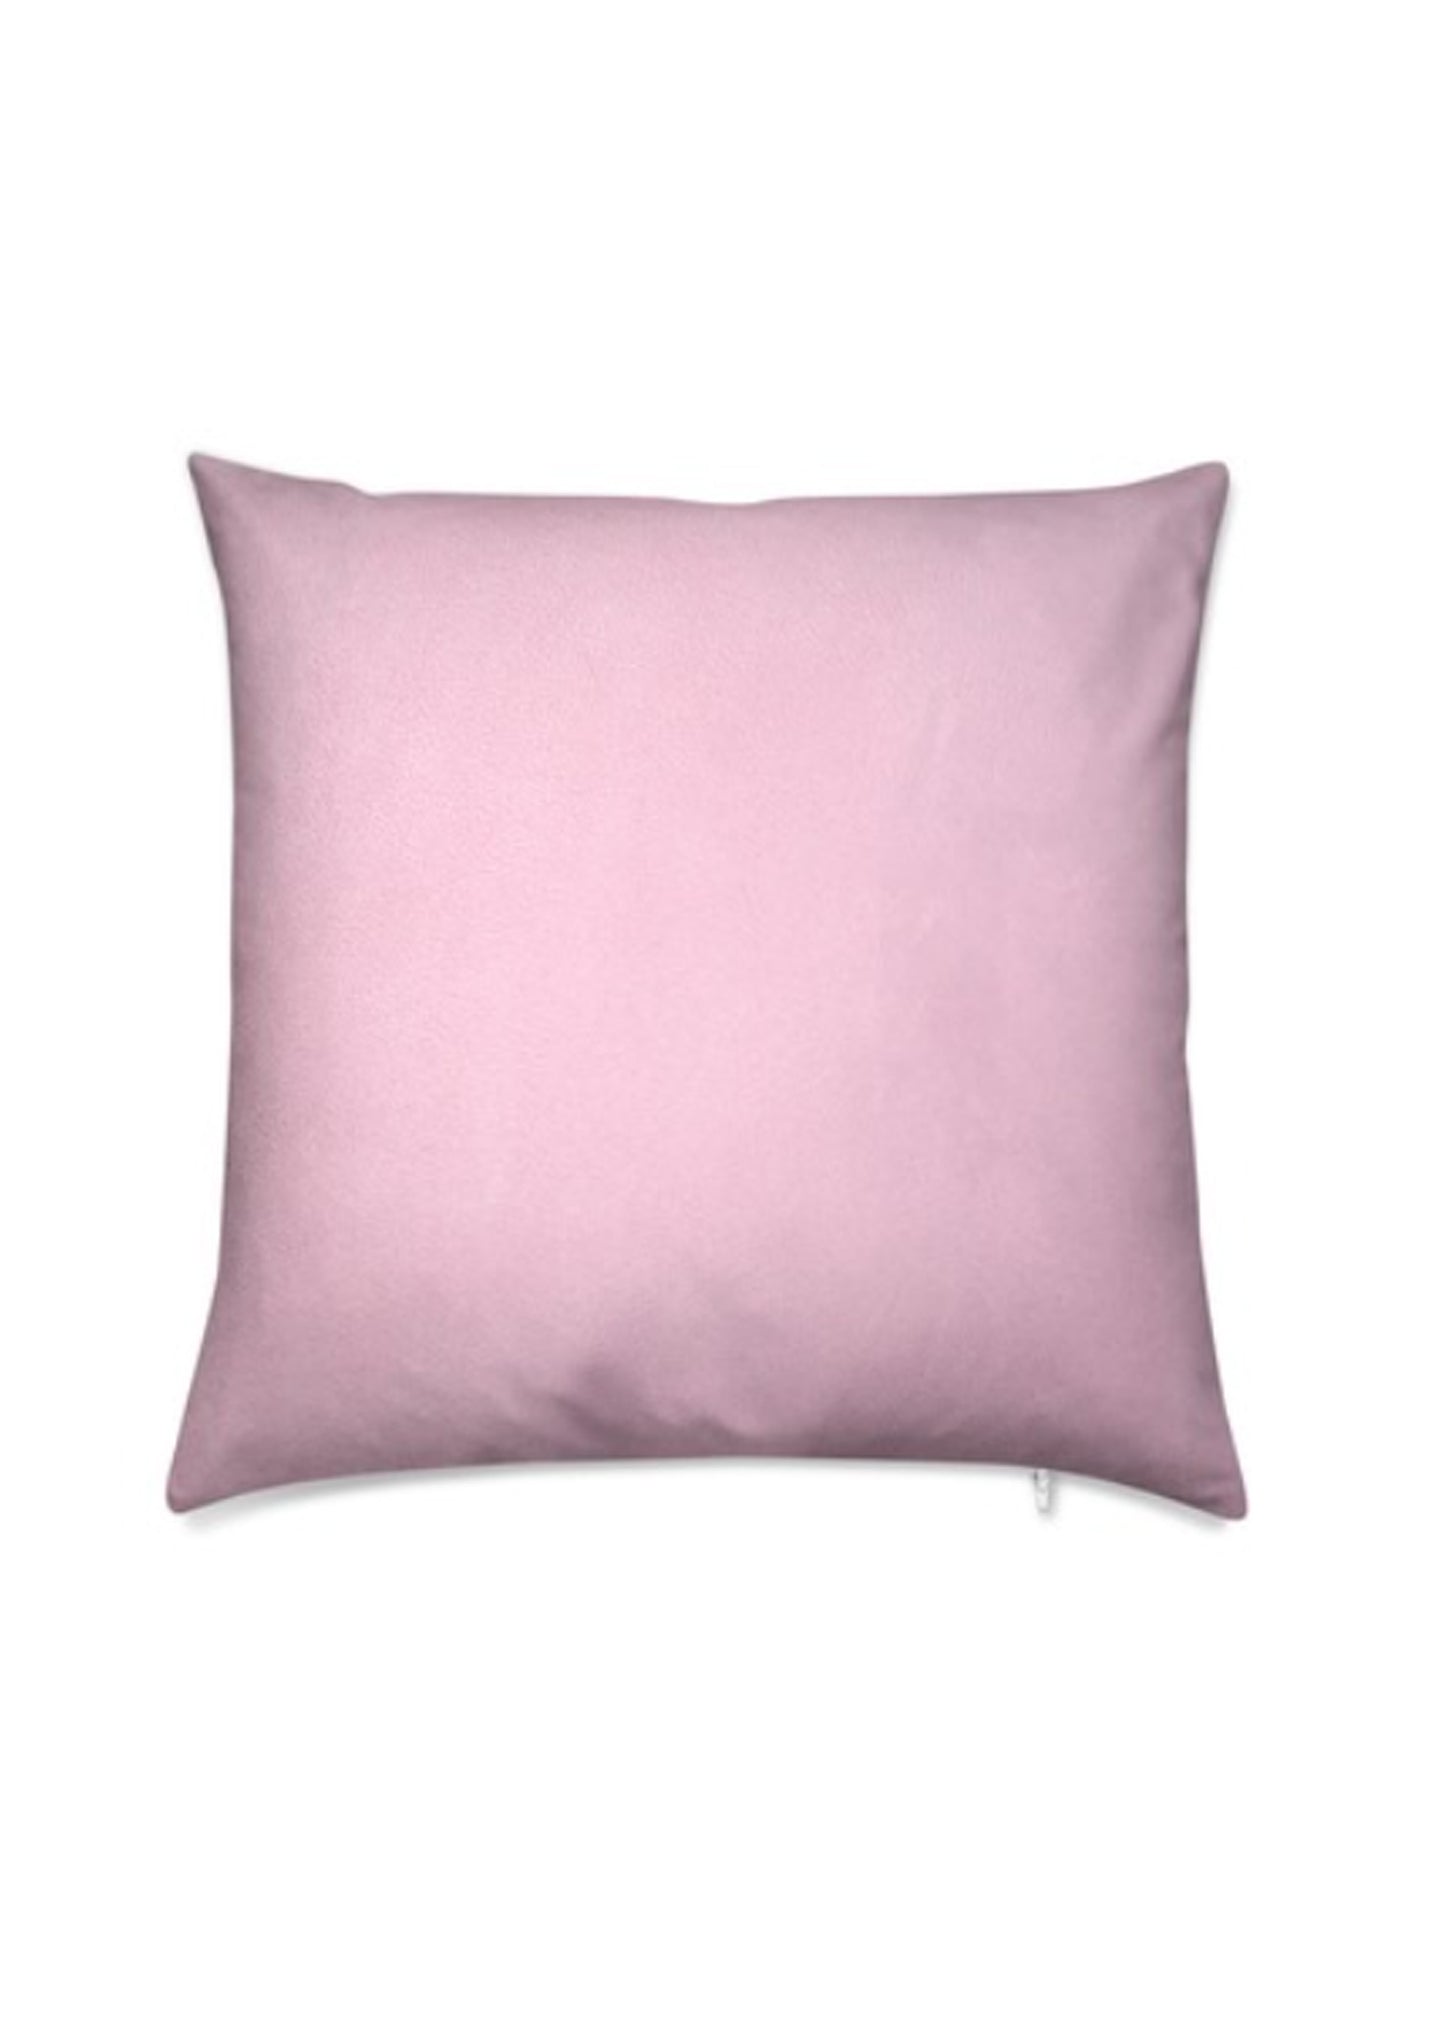 Abstract flower velvet cushion